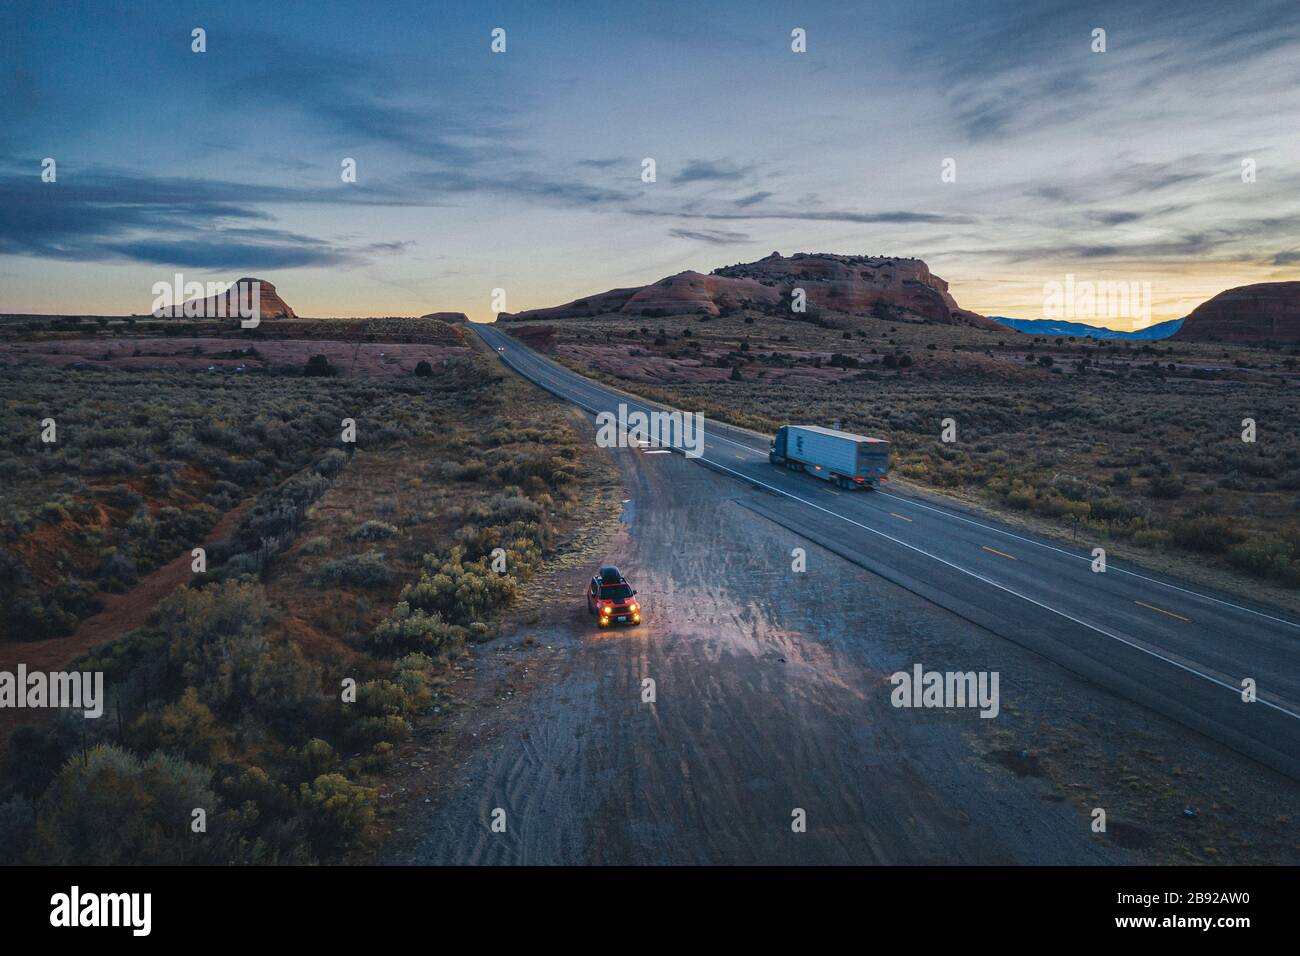 La route de l'Utah est isolée le soir avec une voiture tirée Banque D'Images